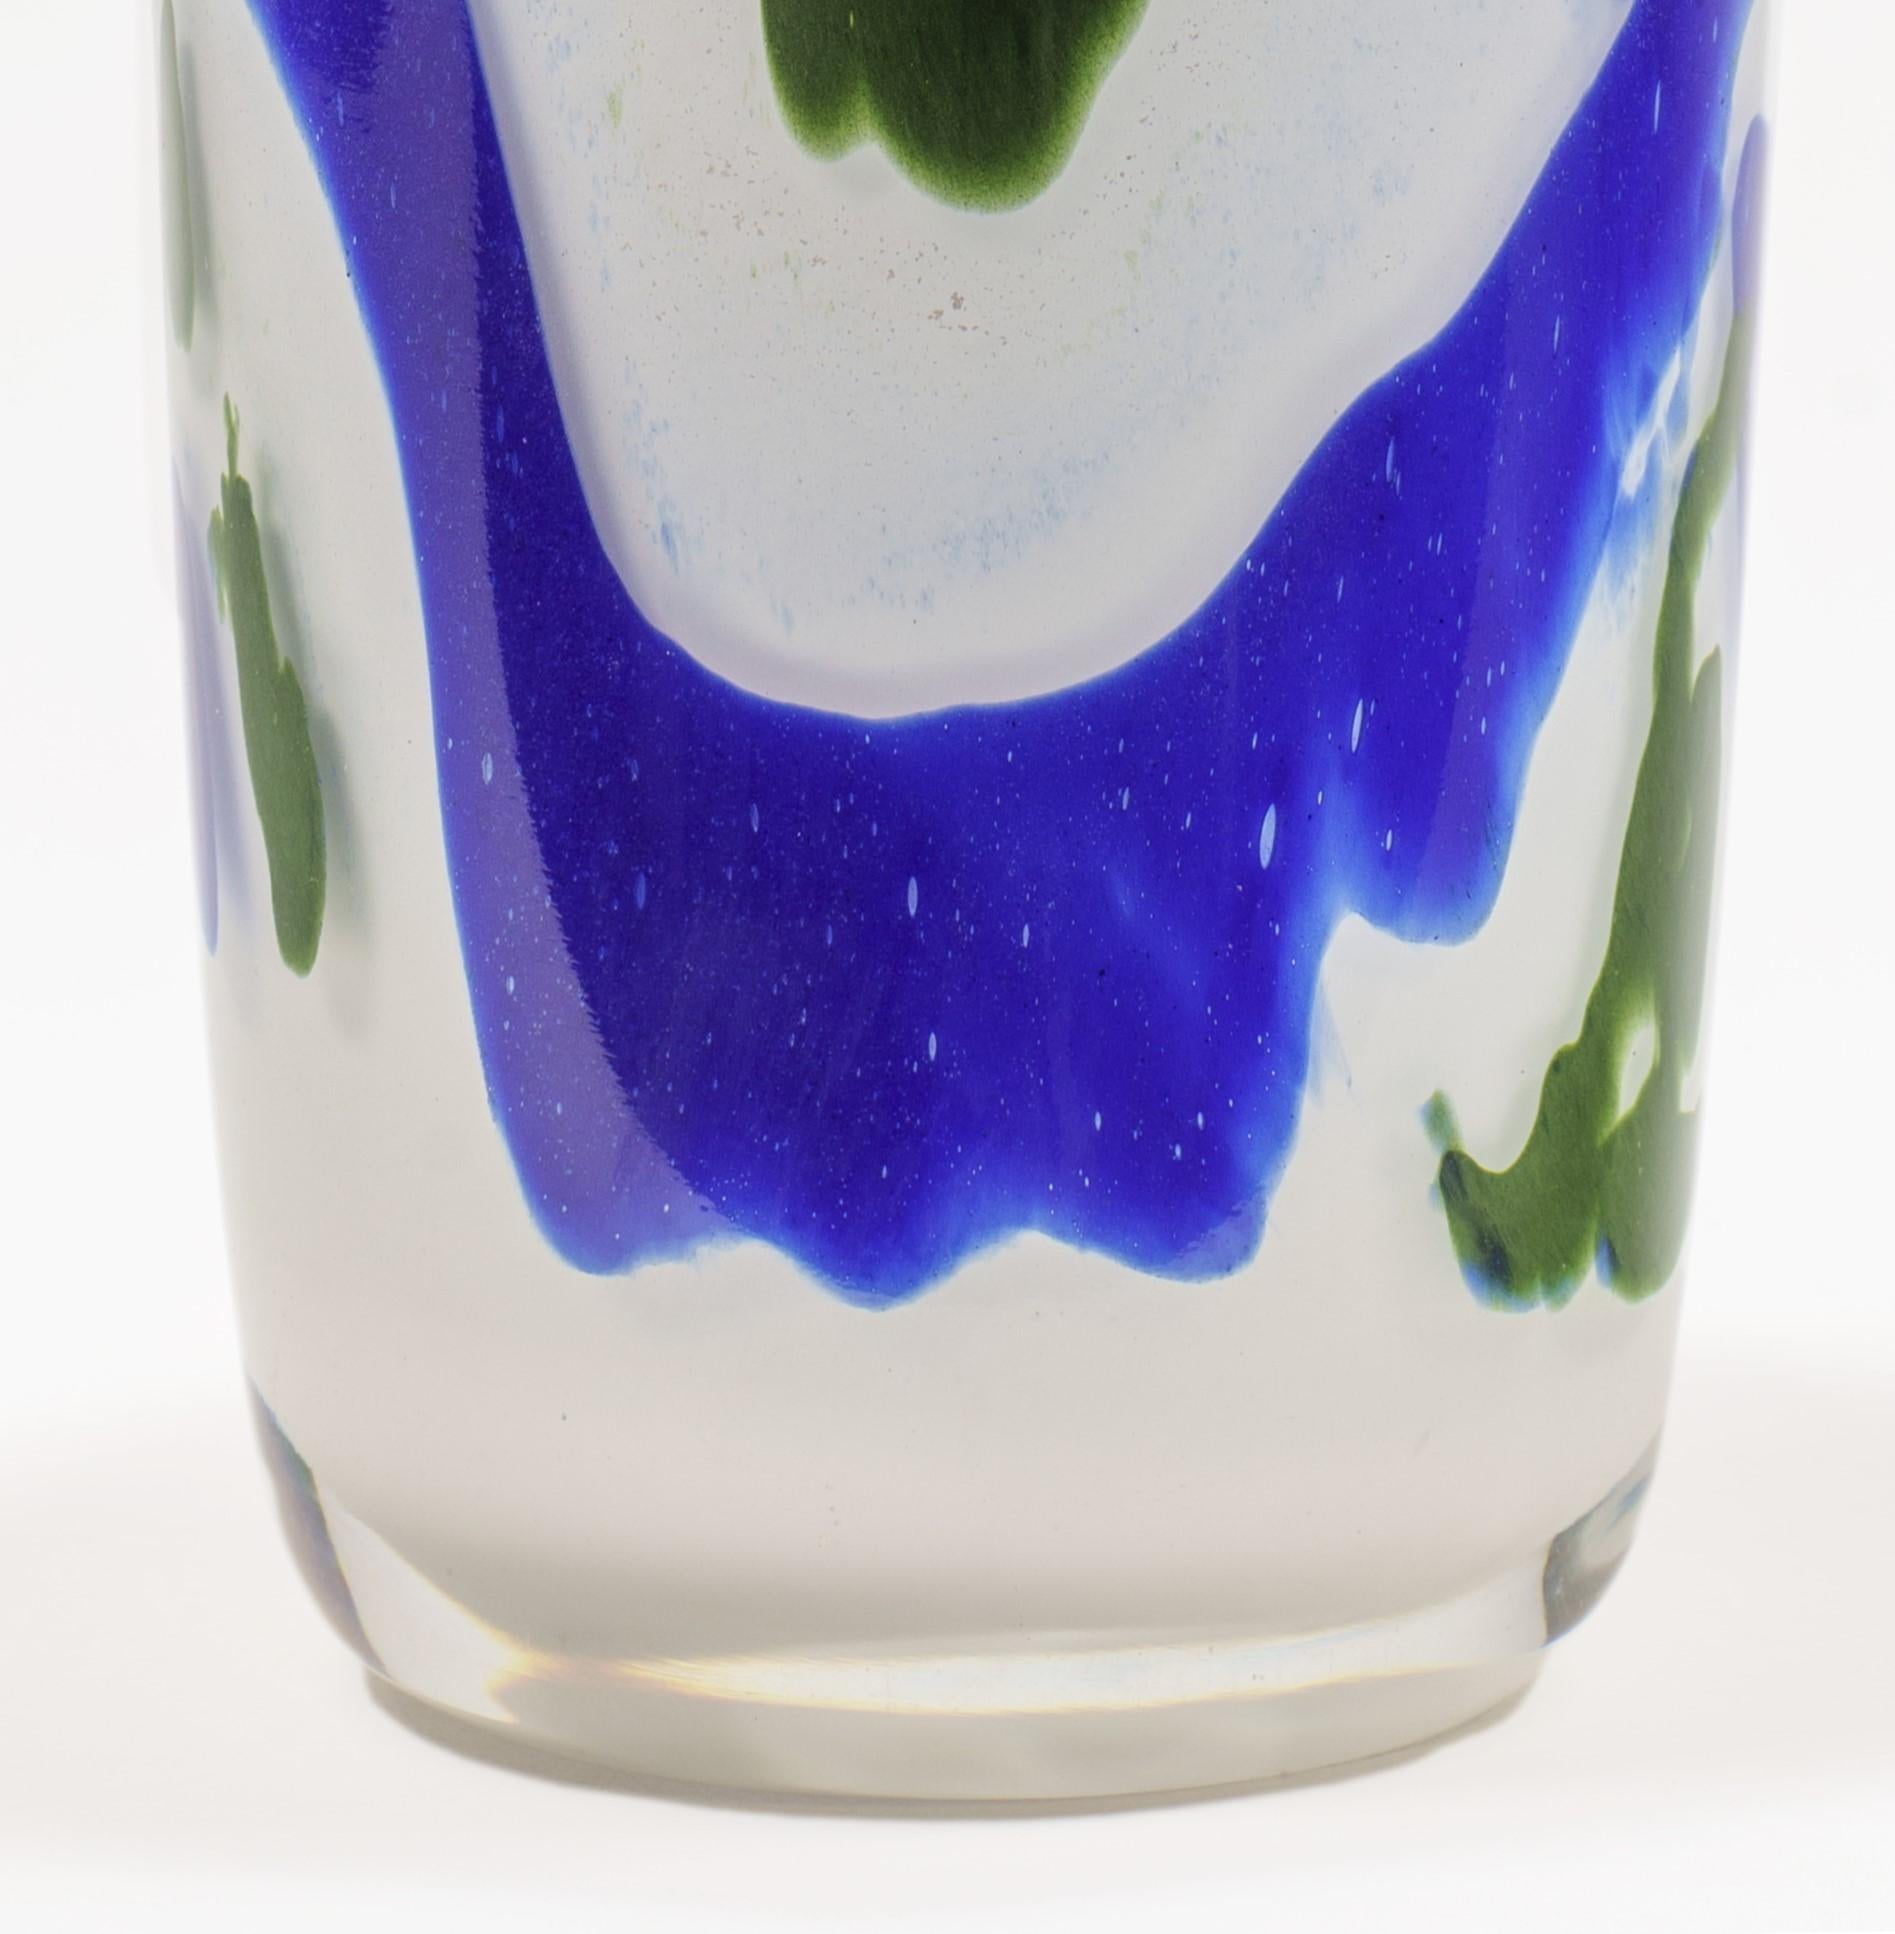 Jeremiah Whiting est un artiste verrier hautement qualifié qui a créé une magnifique pièce en verre soufflé en utilisant des tourbillons bleus et verts sur un fond blanc. Cette pièce est un exemple stupéfiant de l'art et du savoir-faire qui